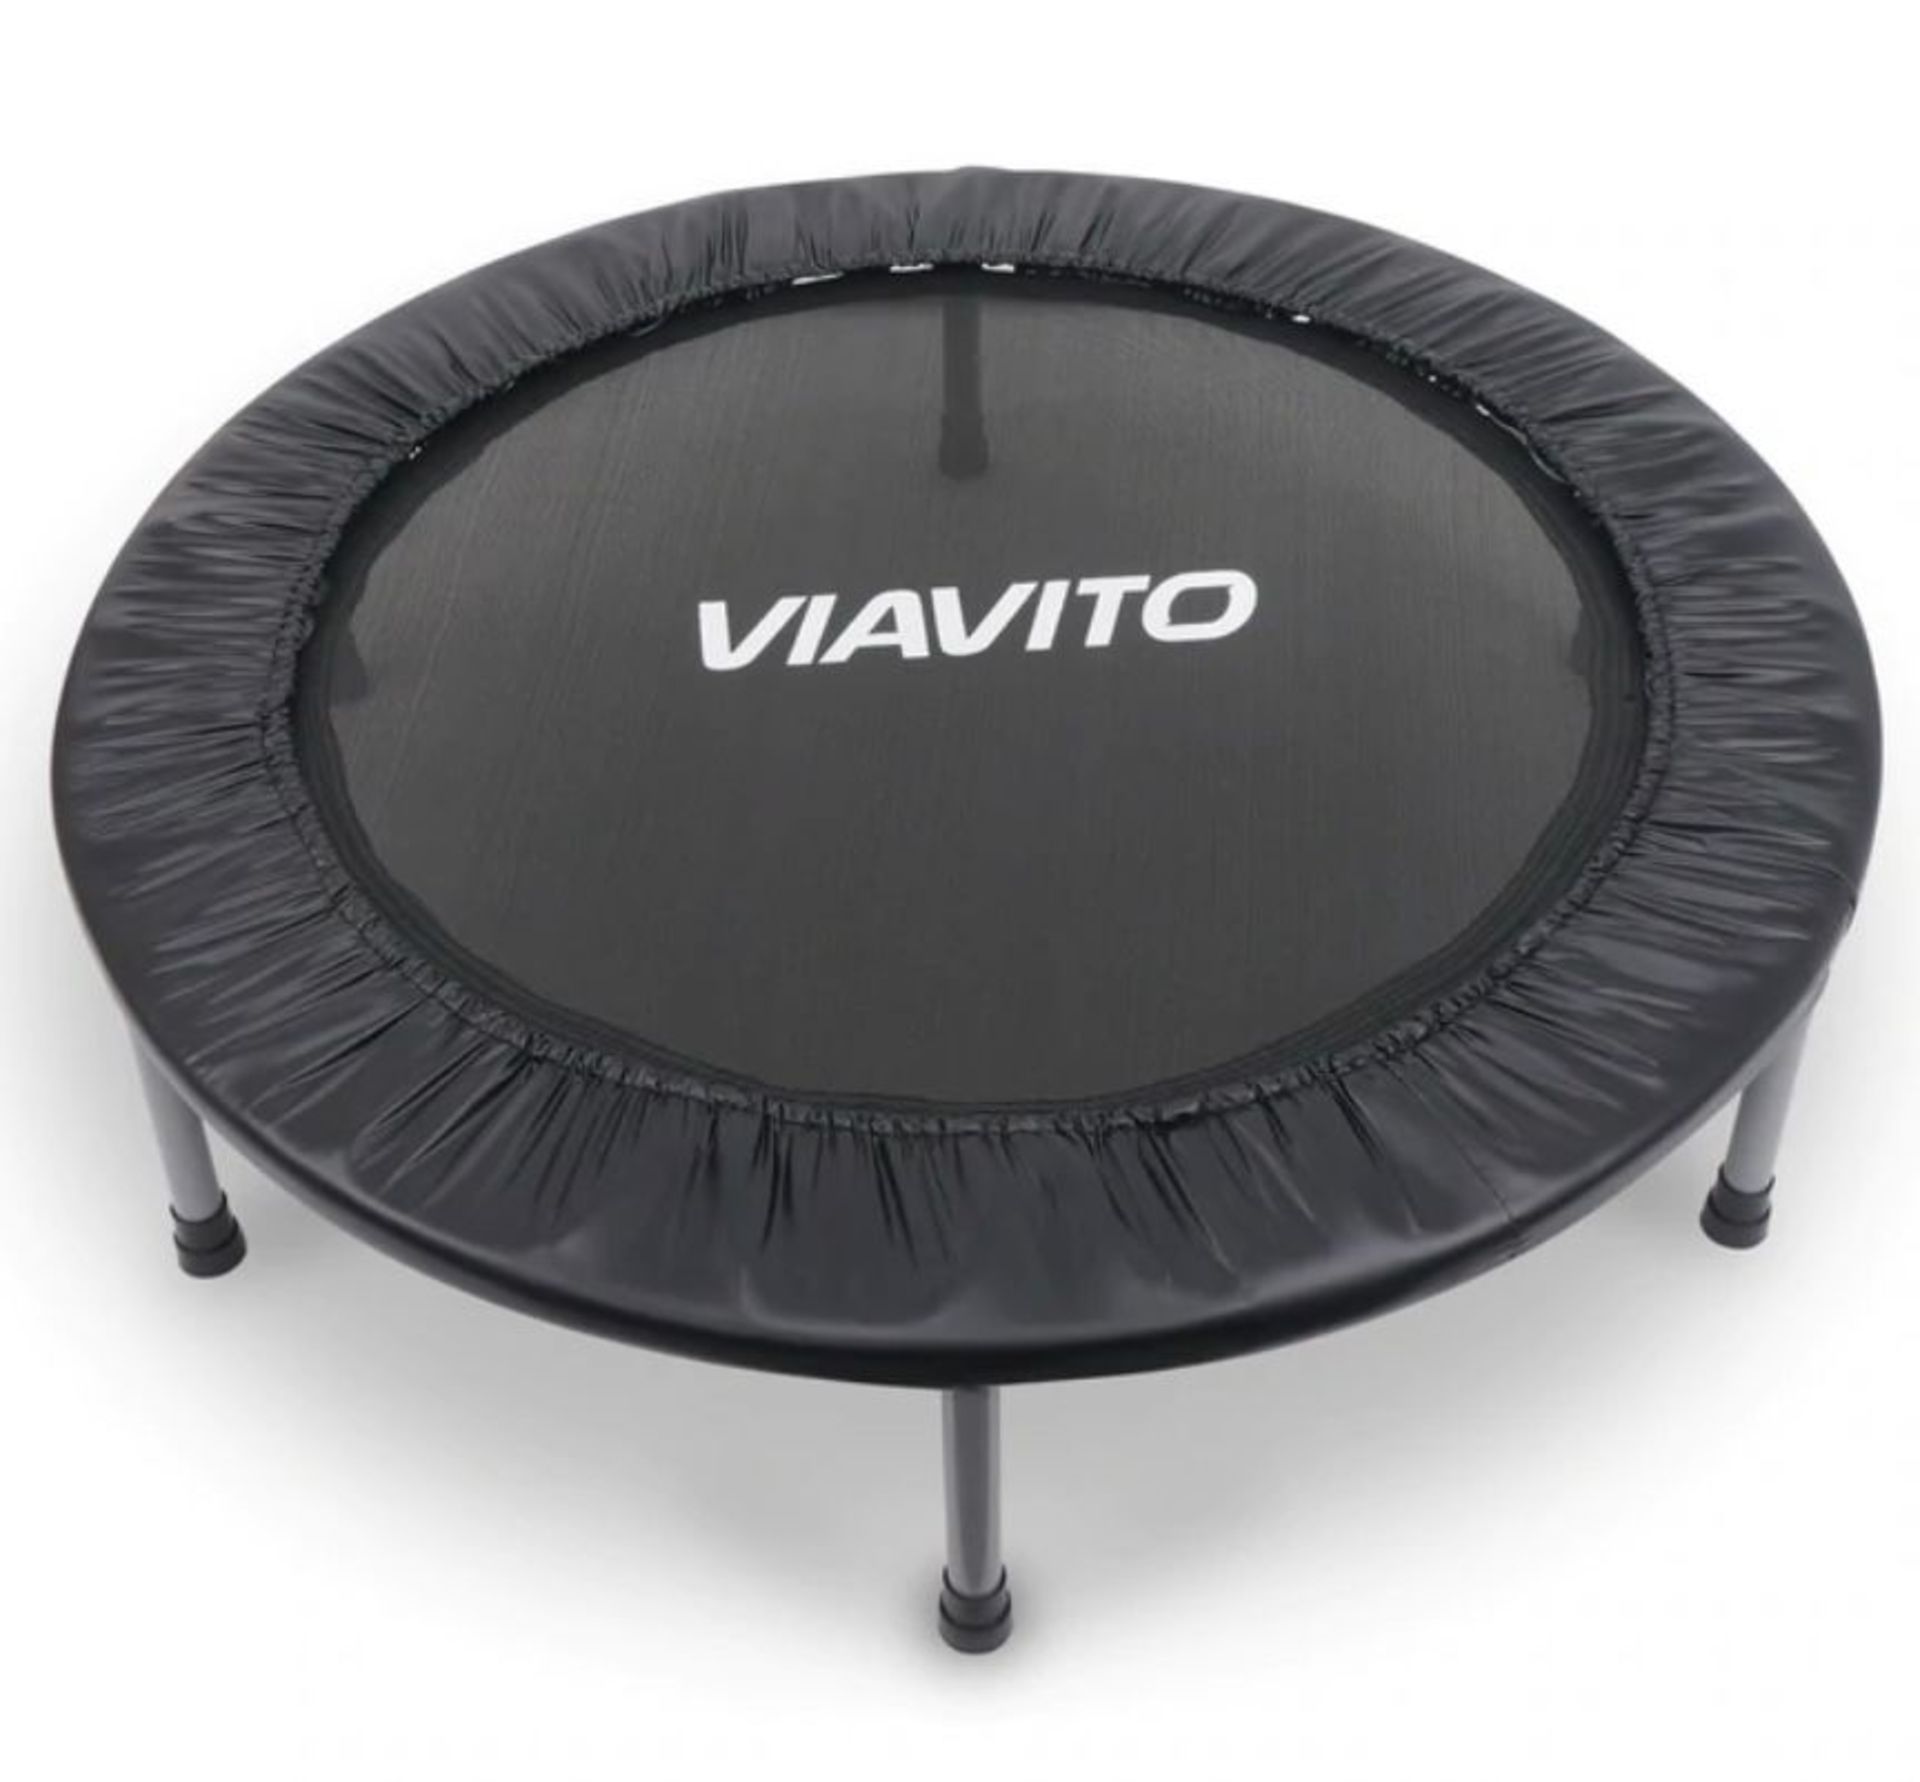 Viavito 38” trampoline *PLUS VAT*